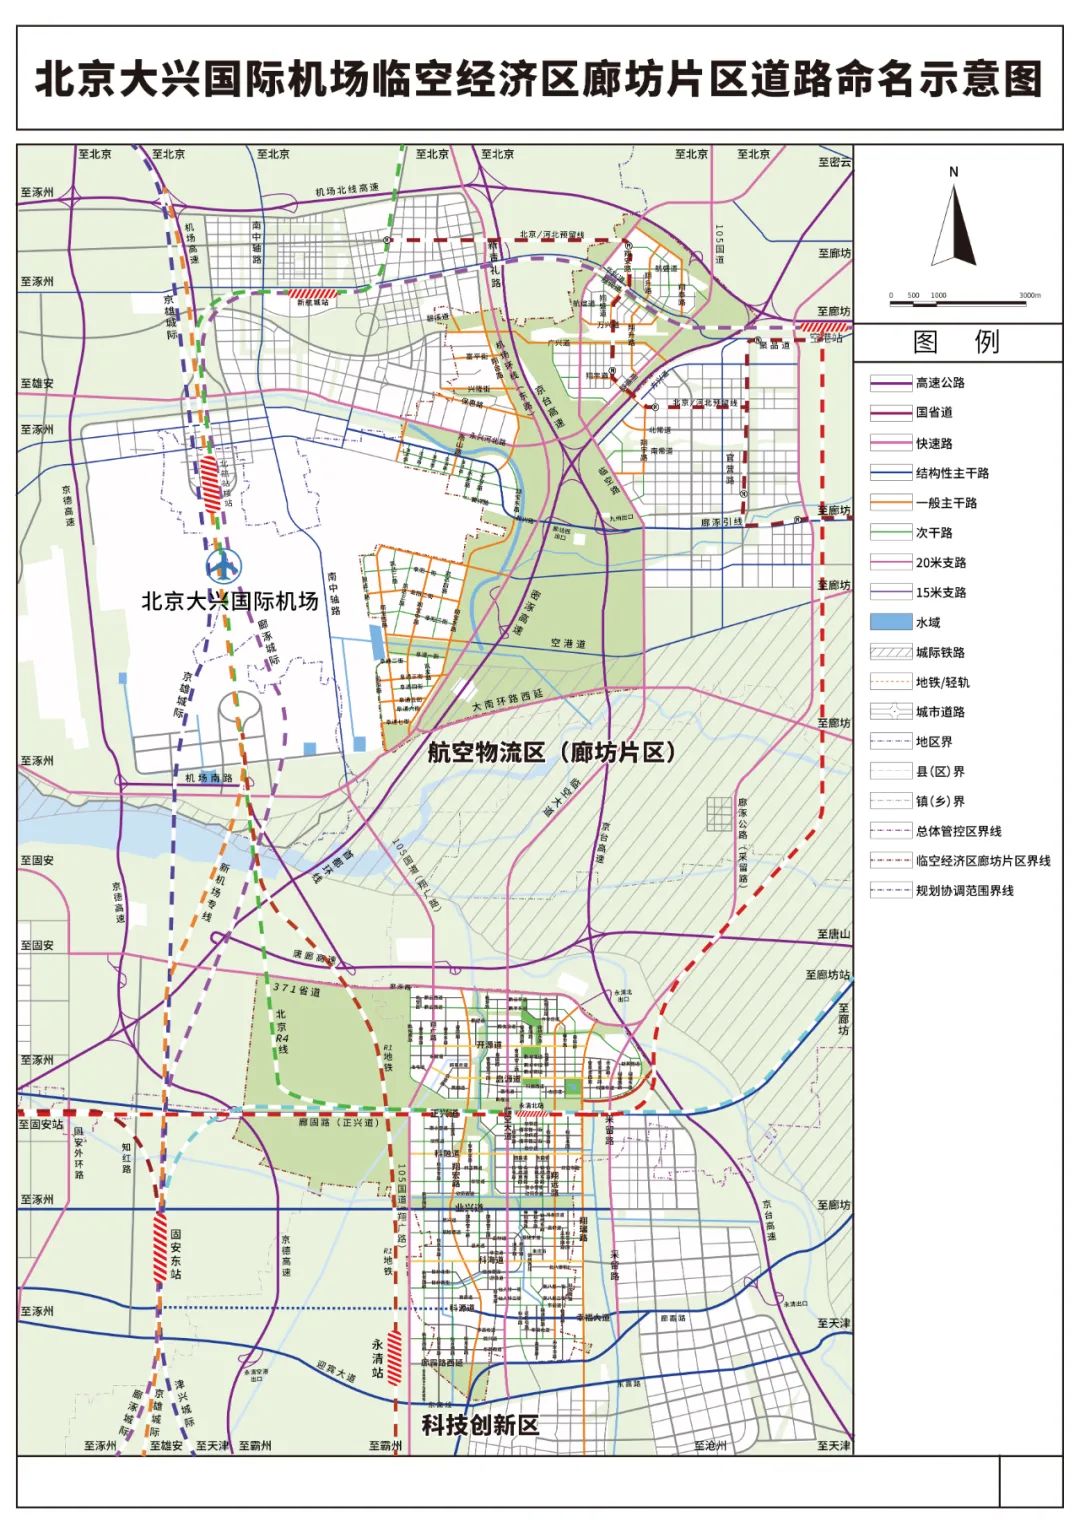 廊坊临空区到北京的地铁规划来袭!